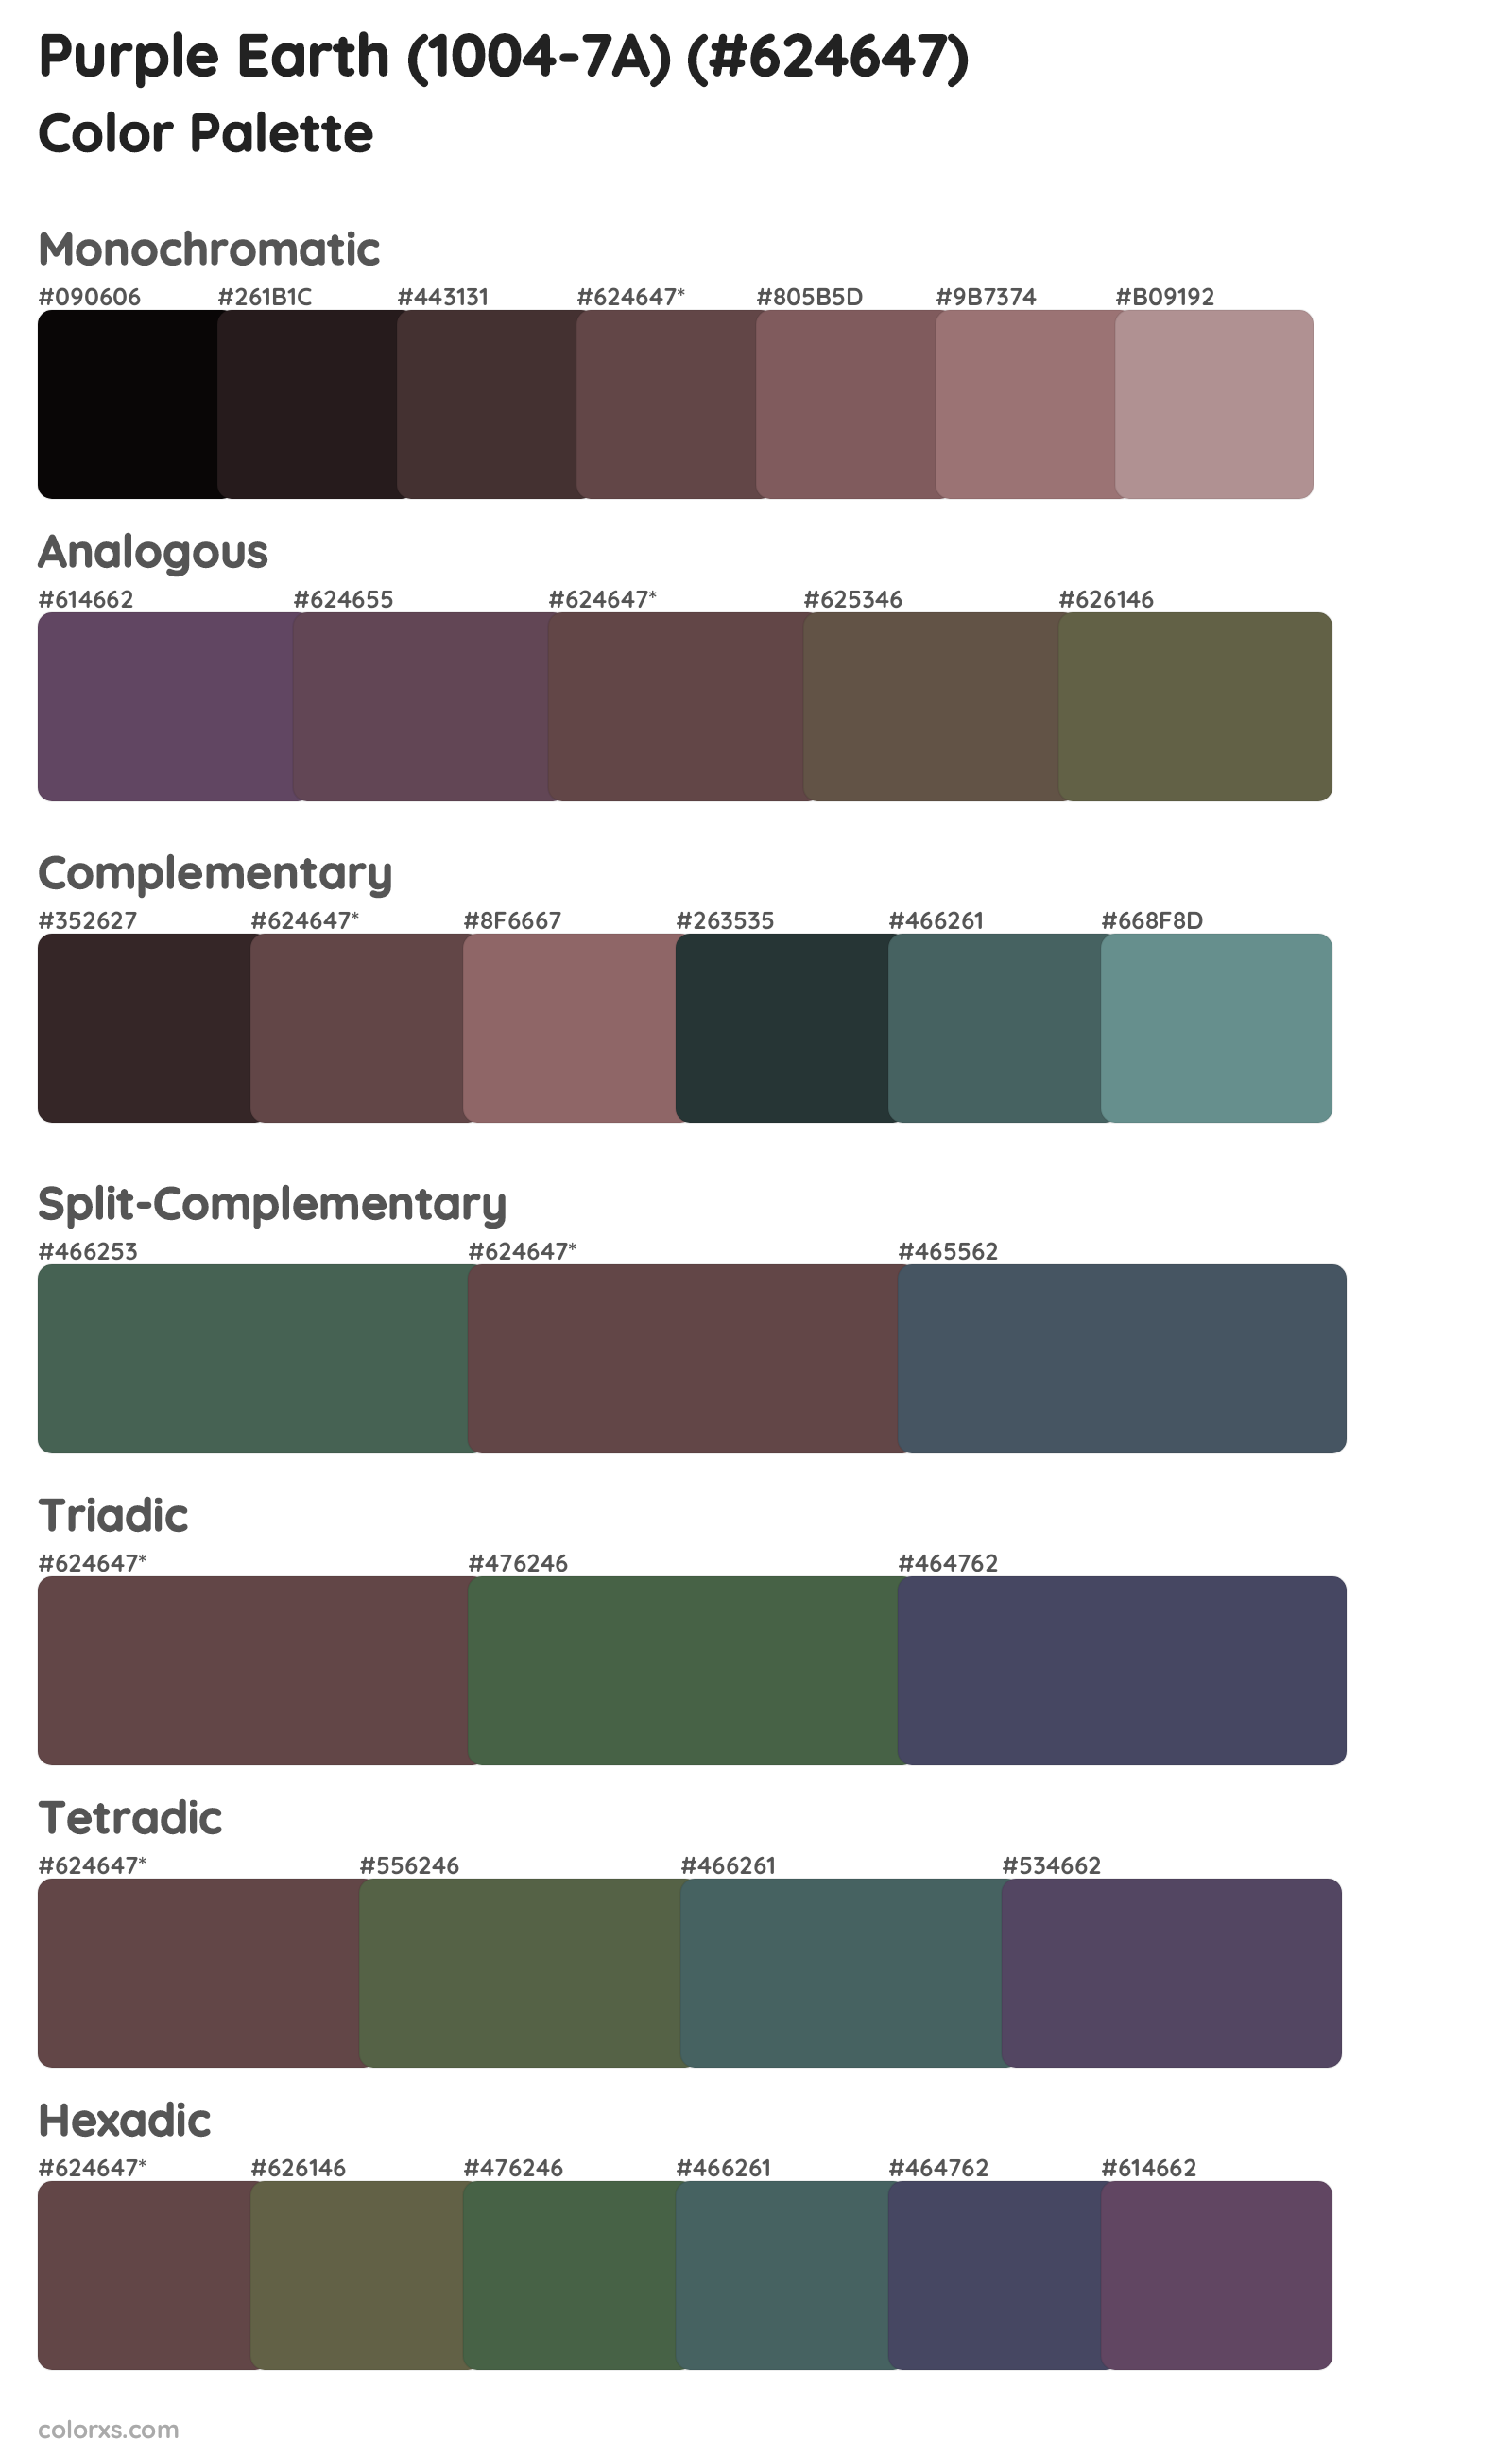 Purple Earth (1004-7A) Color Scheme Palettes